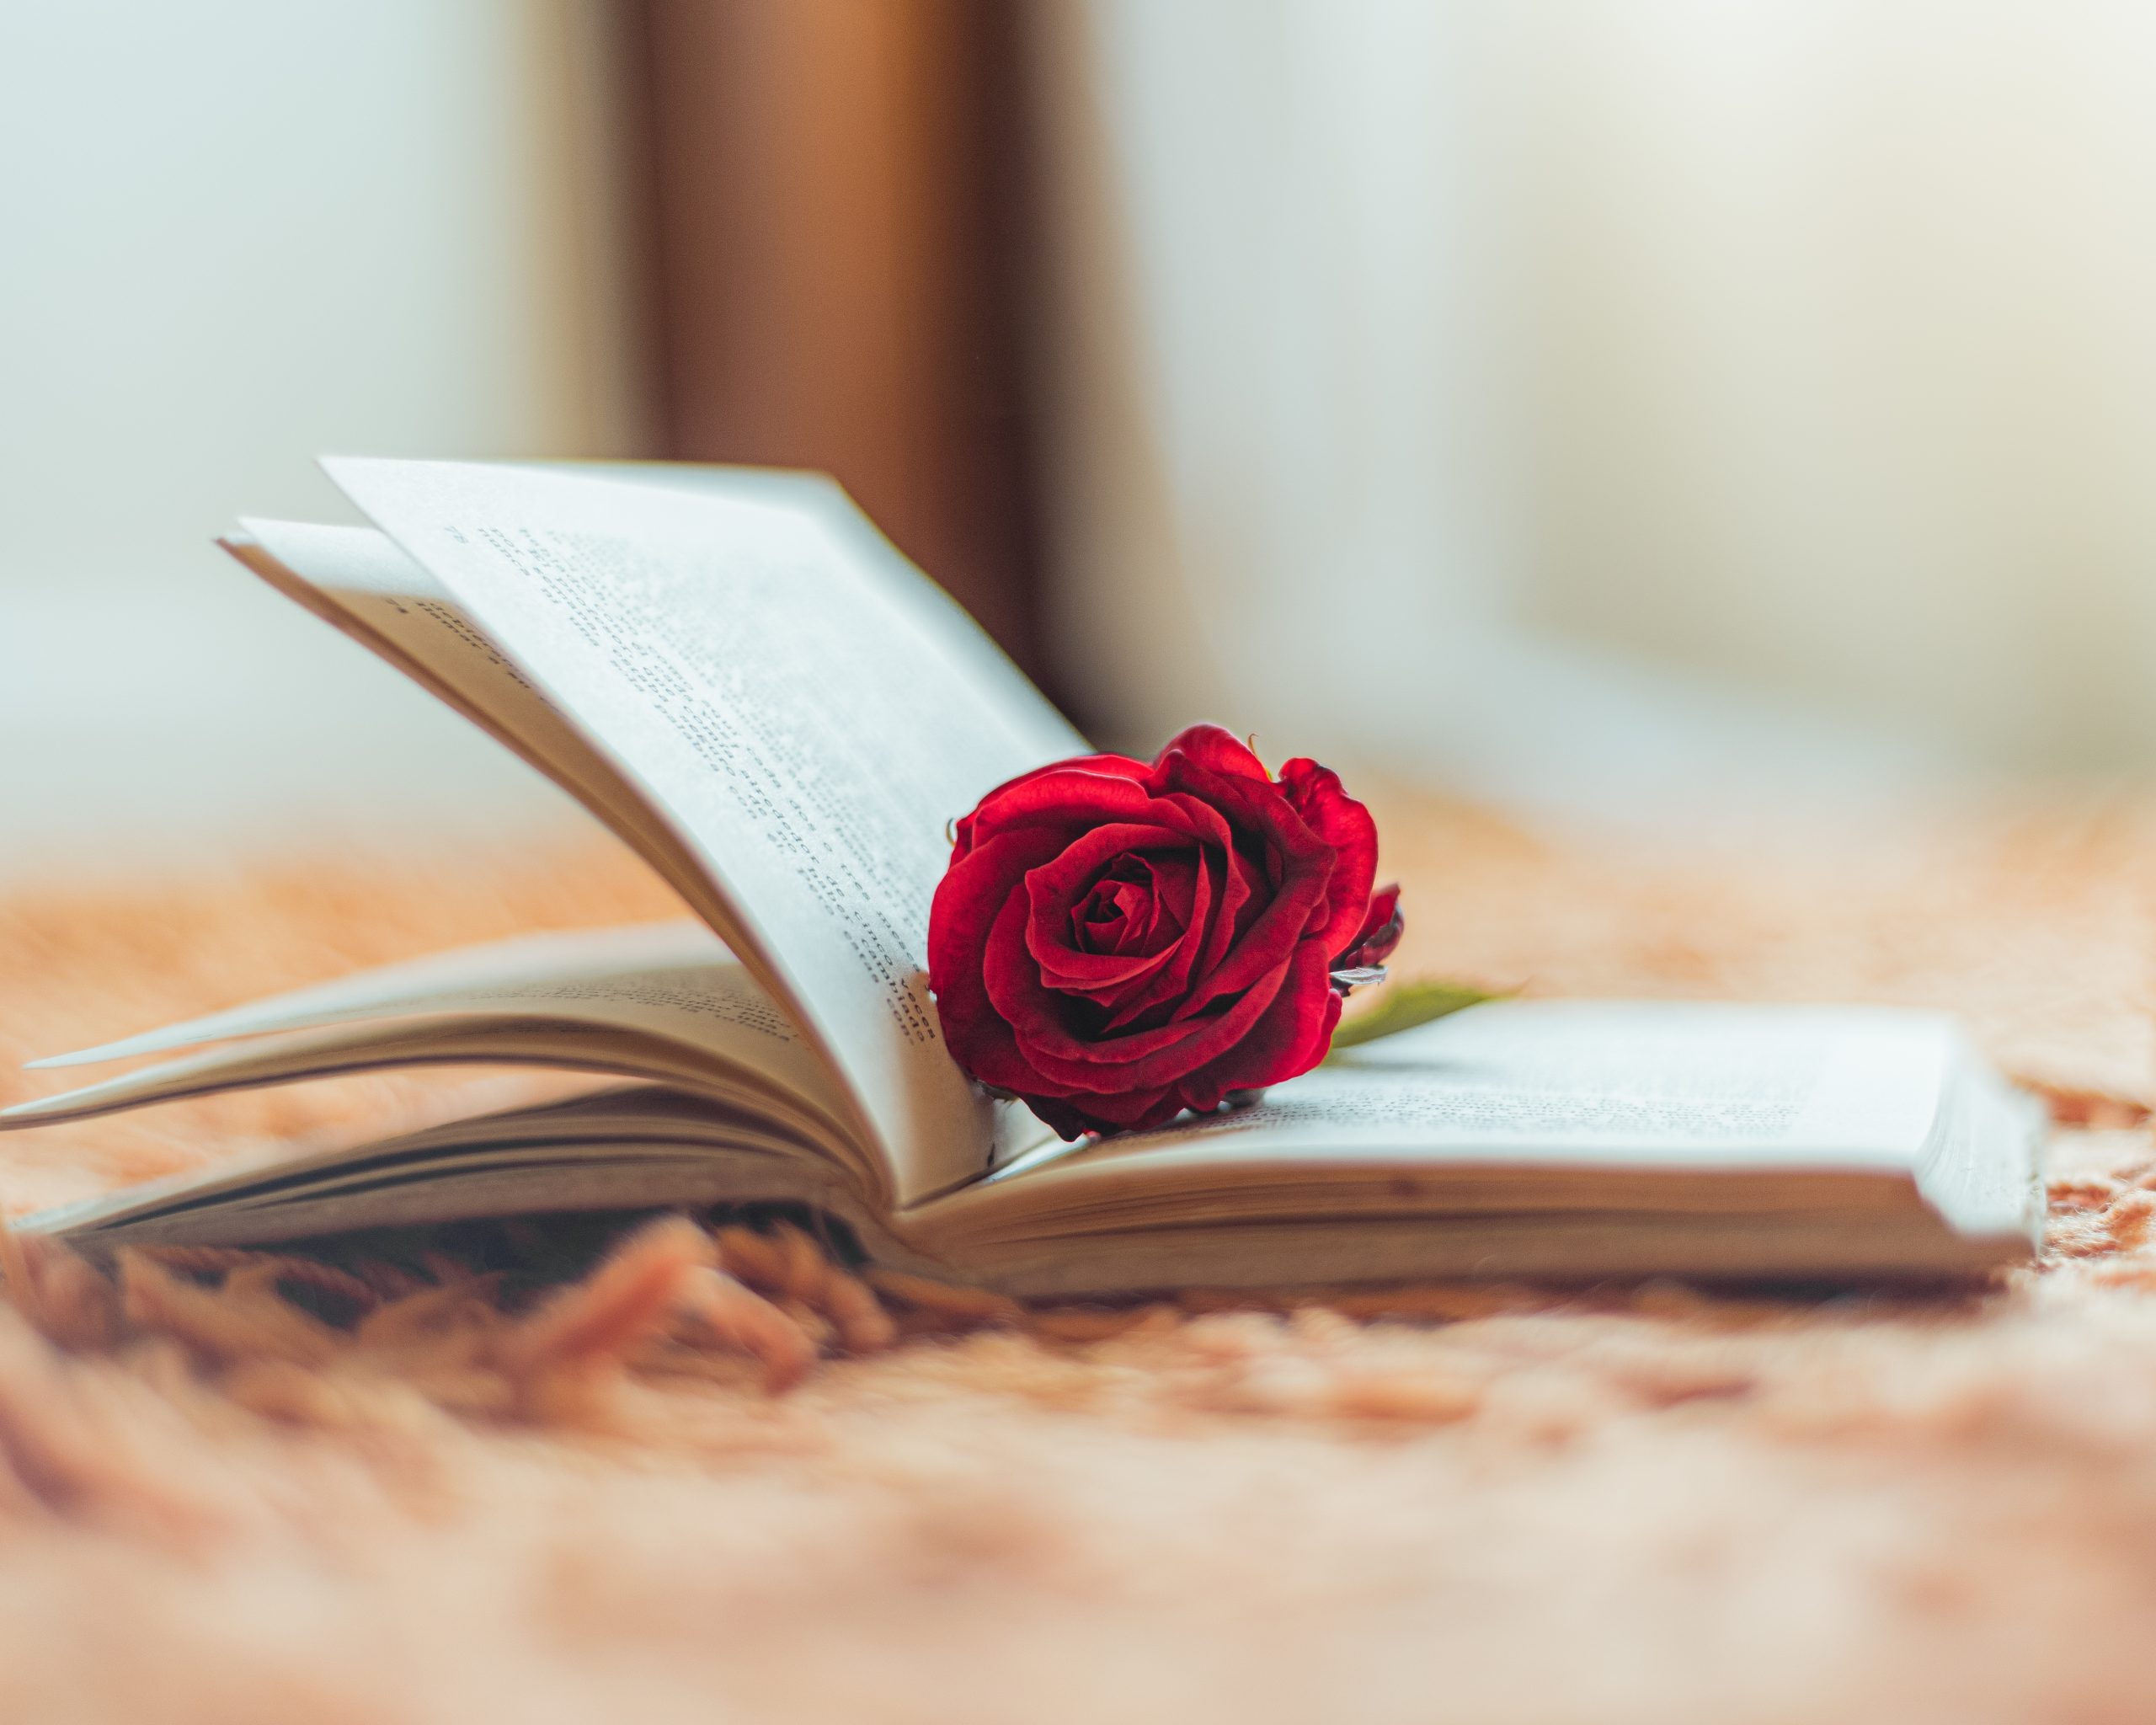 Red rose inside an open book